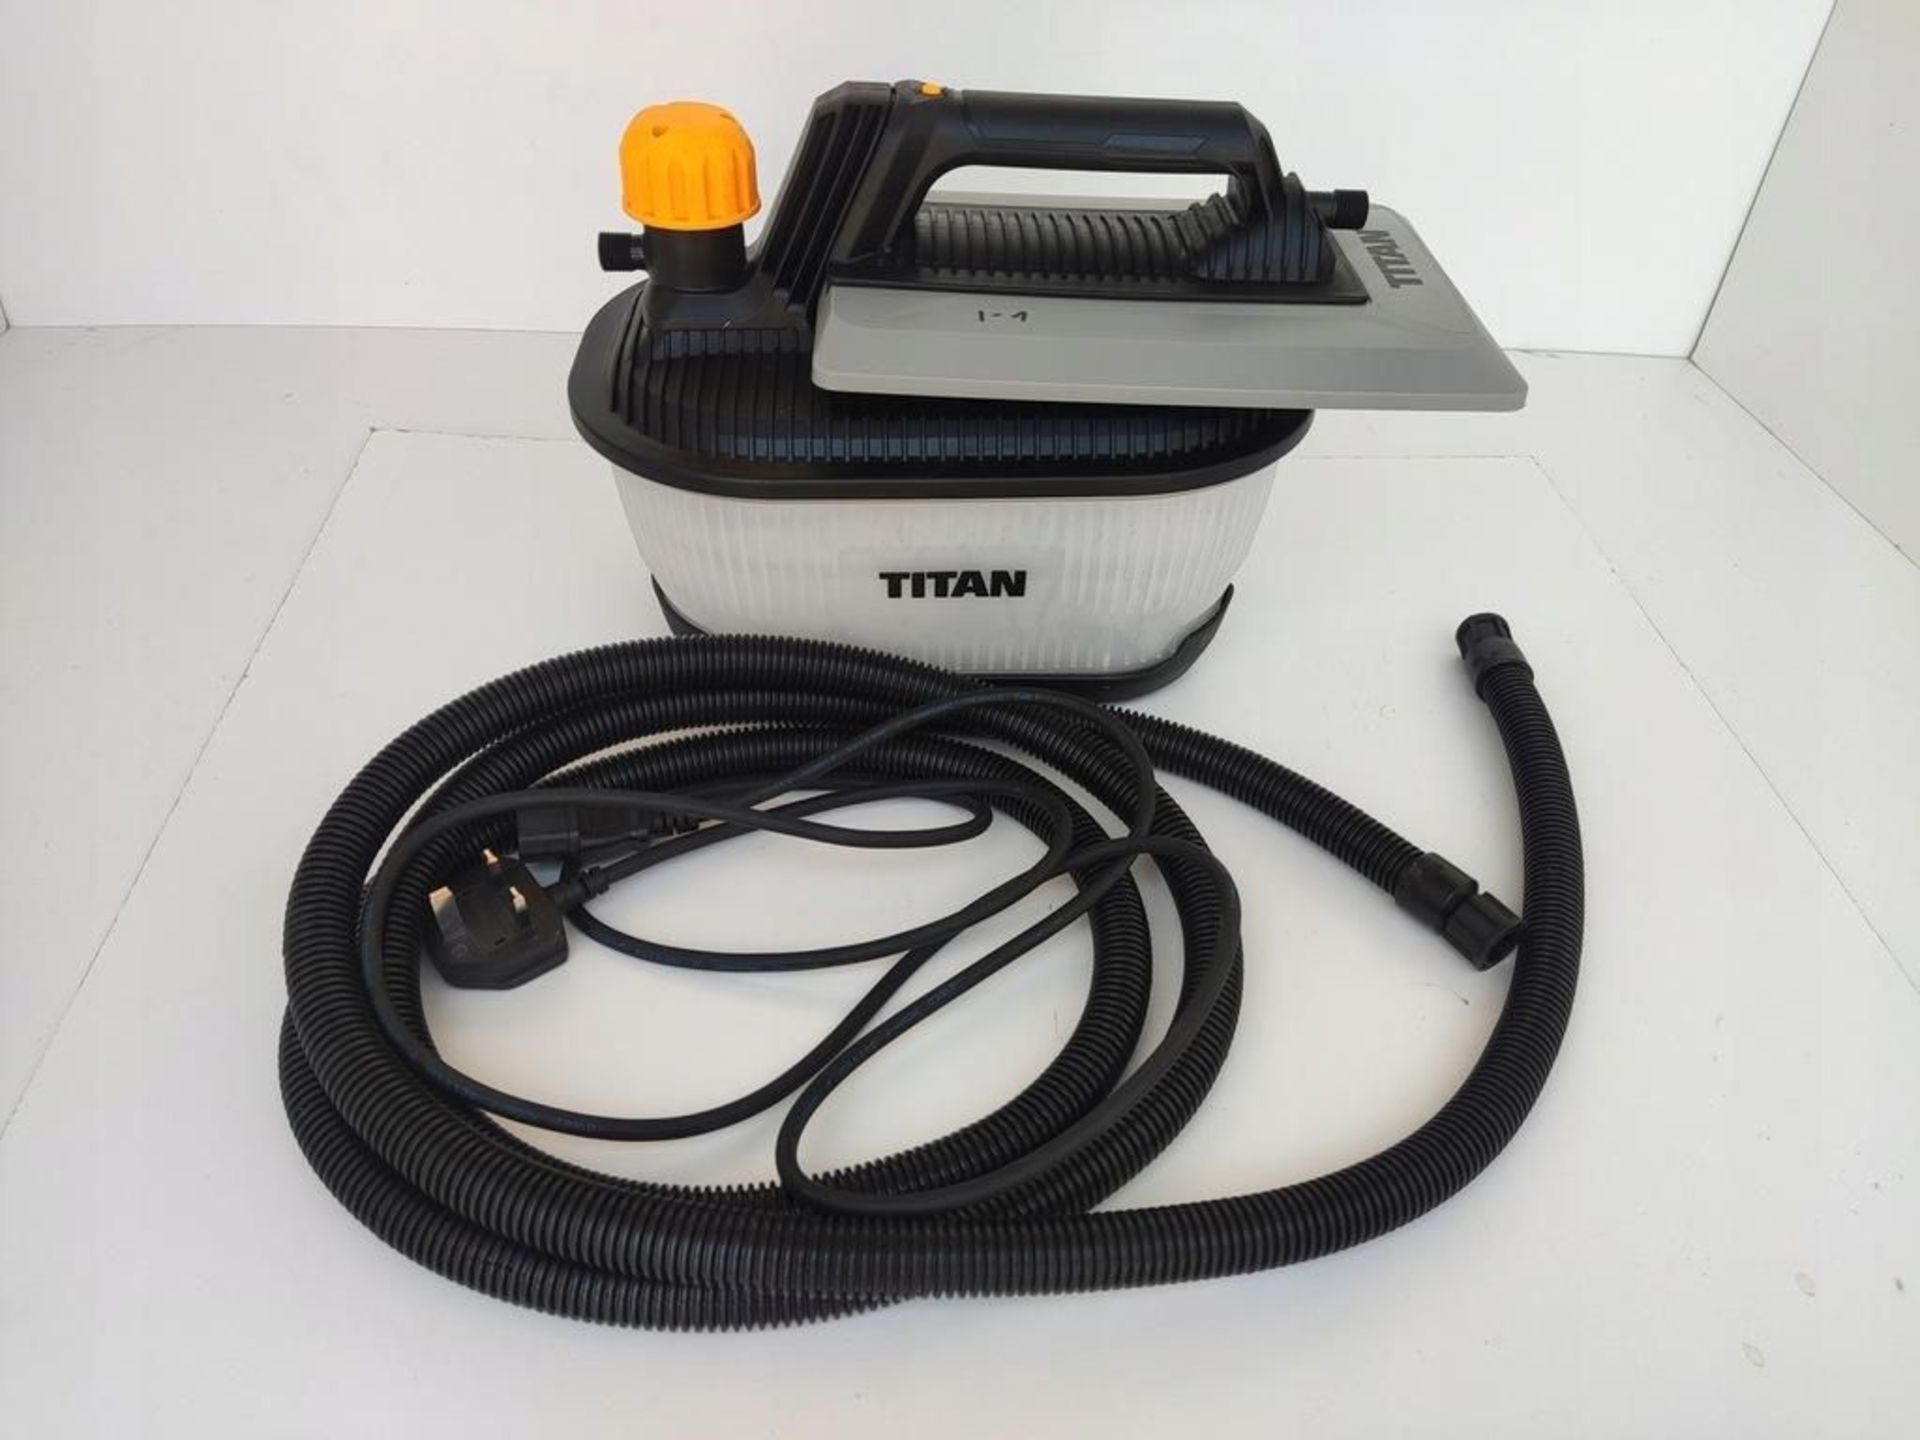 Titan 2000W Steam Wallpaper Stripper TTB772STM 4Ltr Capacity 240V - R14.14. - Image 2 of 2